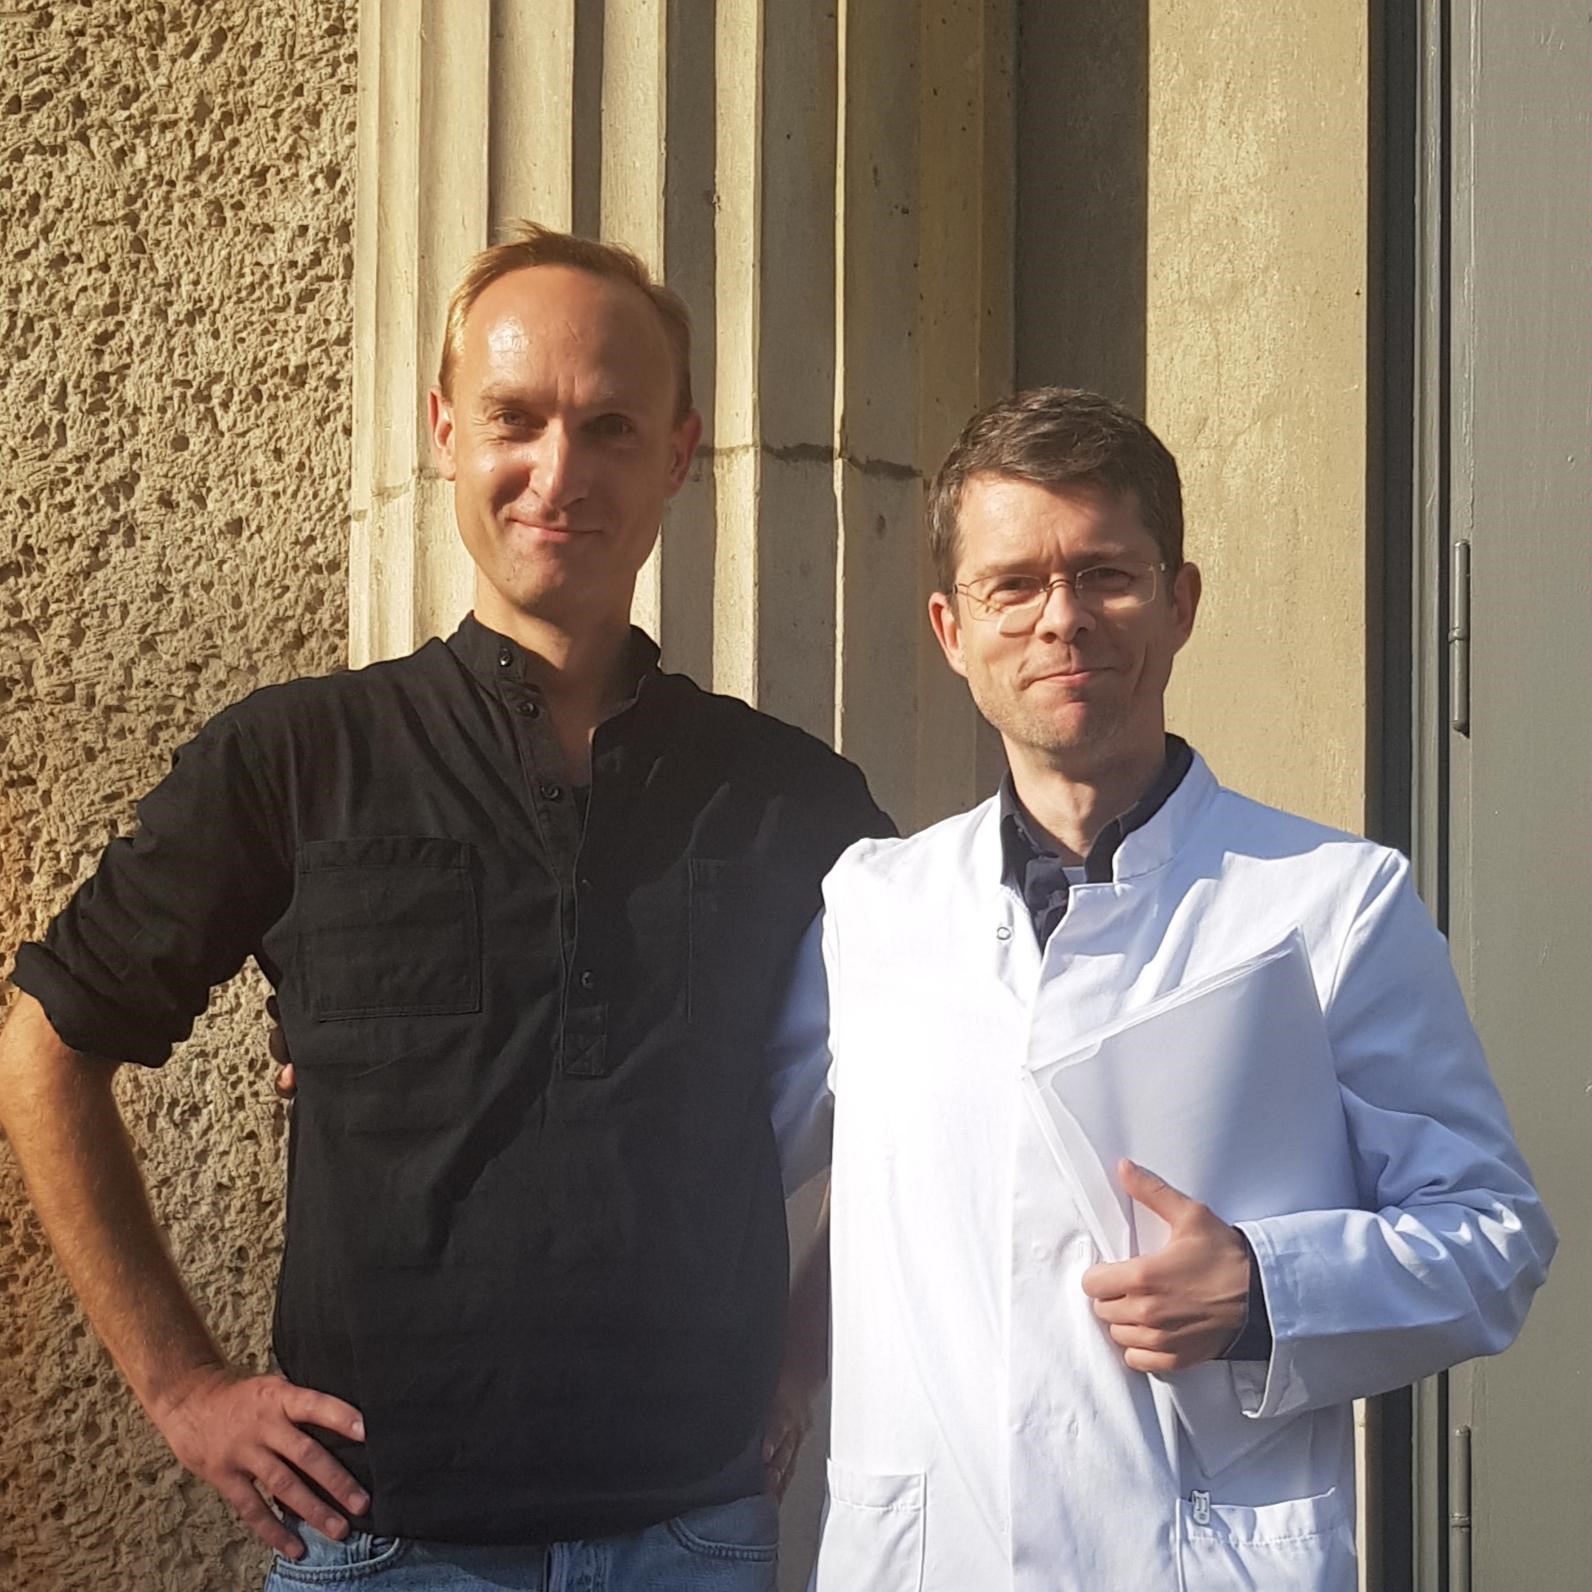 Dr. Steffen Lukas and Prof. Dewey